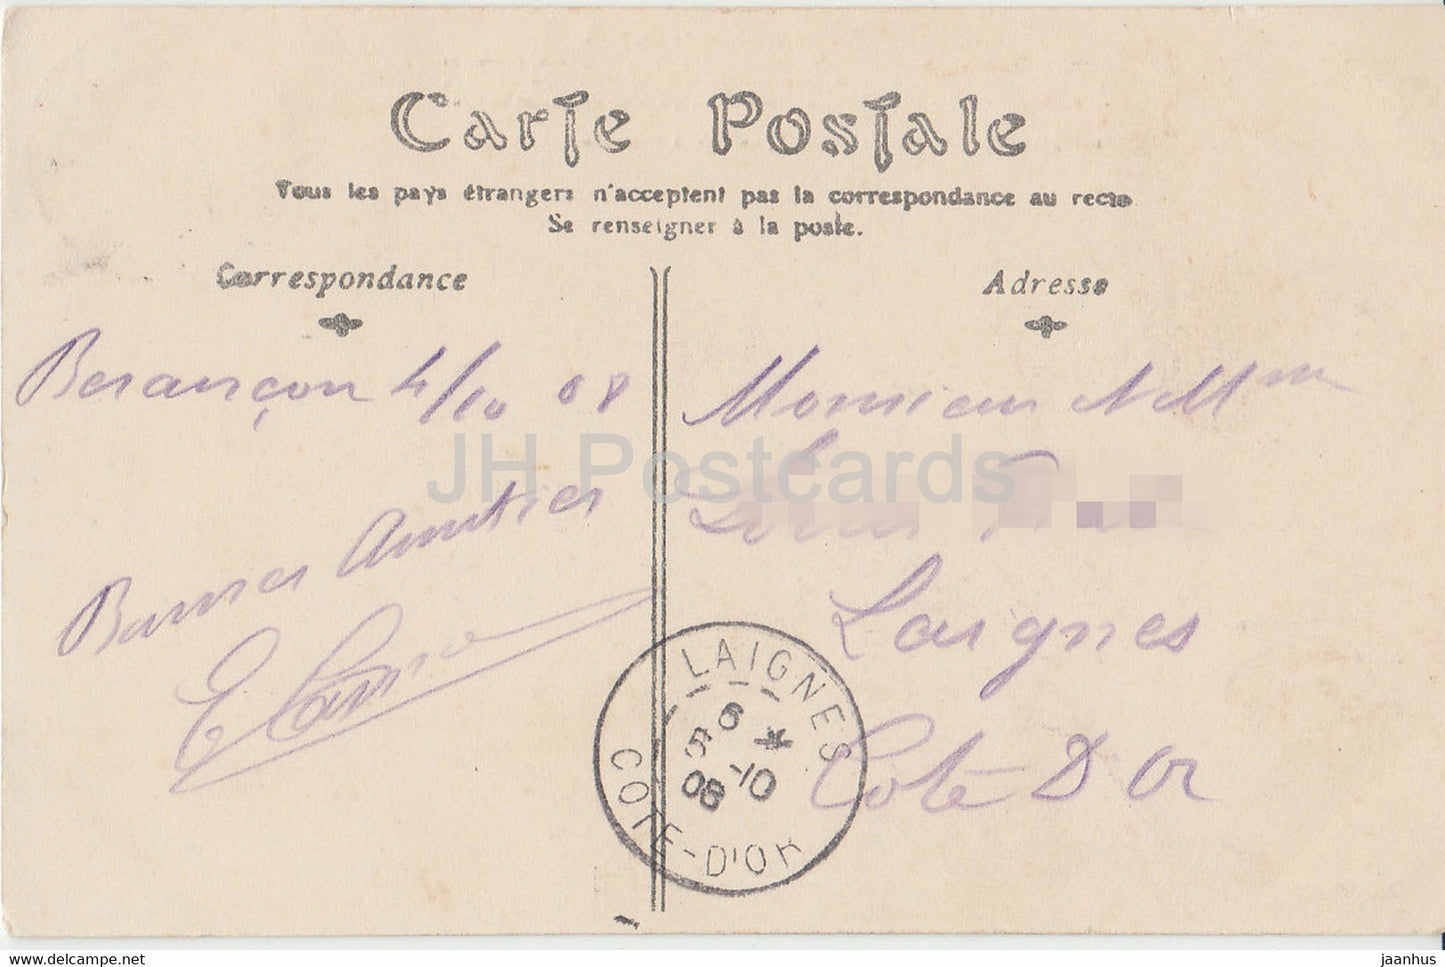 Besancon – L'Horloge de St Jean – Uhr – alte Postkarte – 1908 – Frankreich – gebraucht